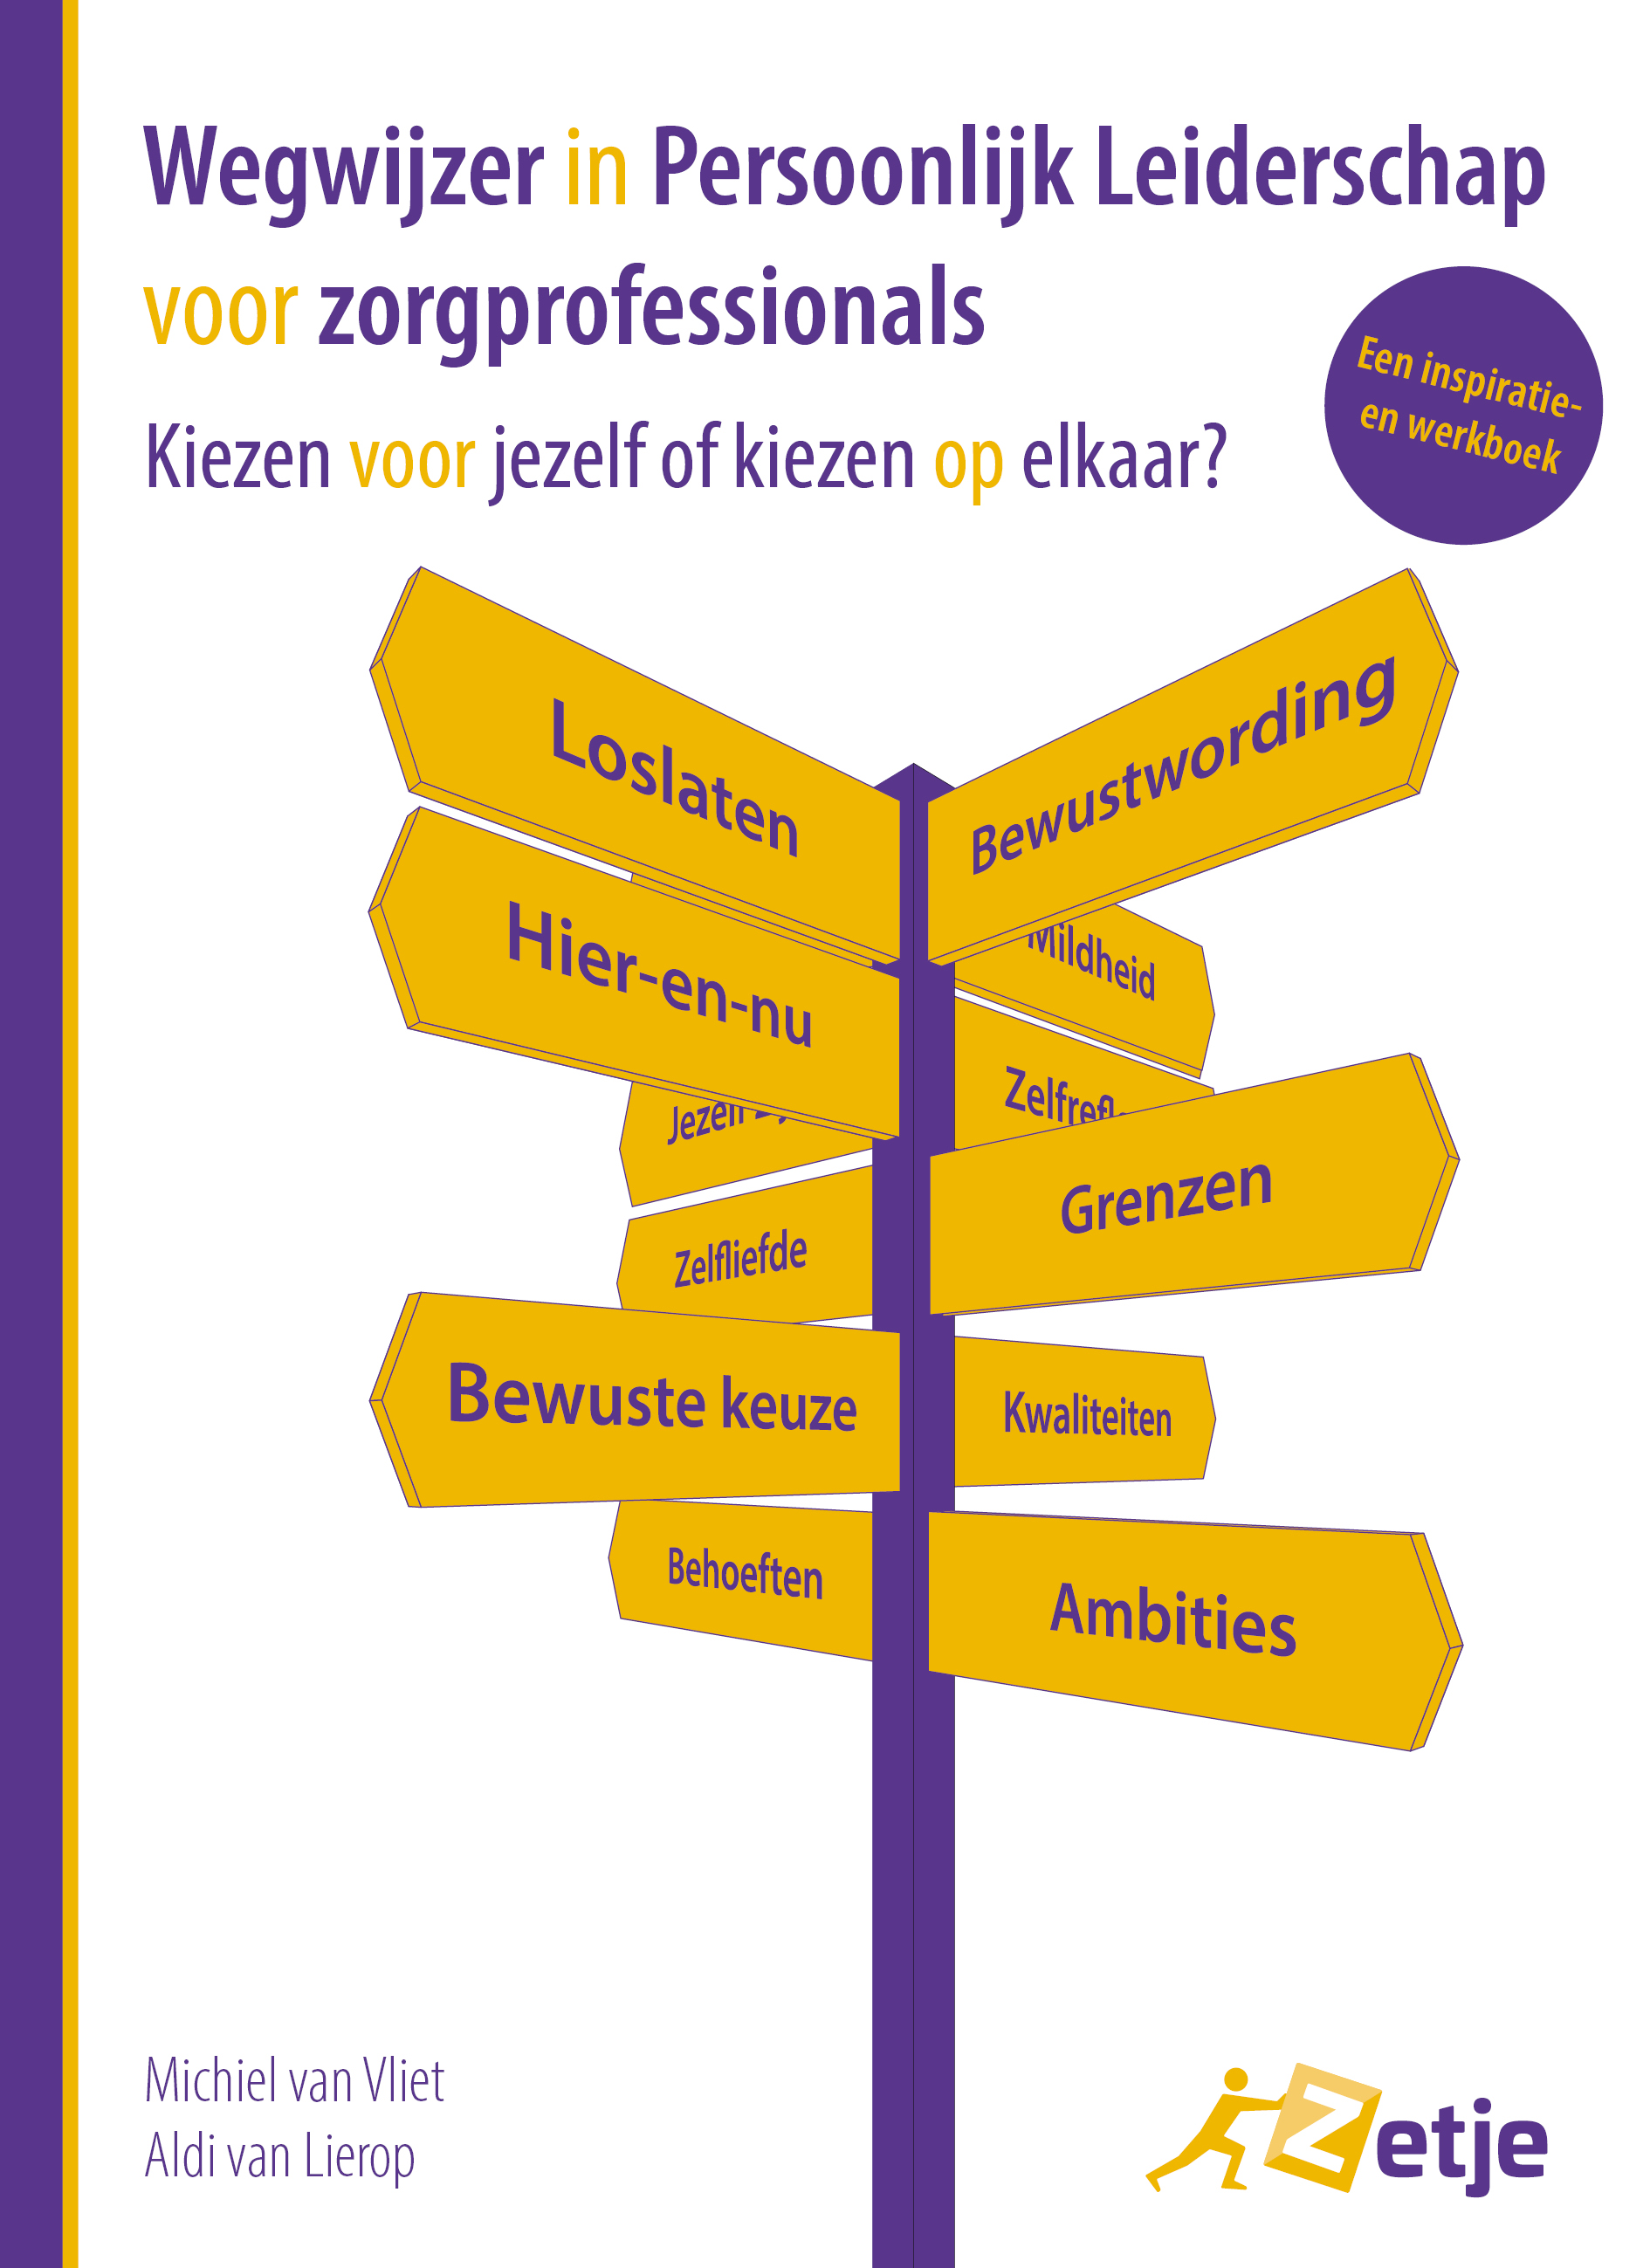 Boek 'Wegwijzer in Persoonlijk Leiderschap voor Zorgprofessionals' lanceert op 15 mei 2024!